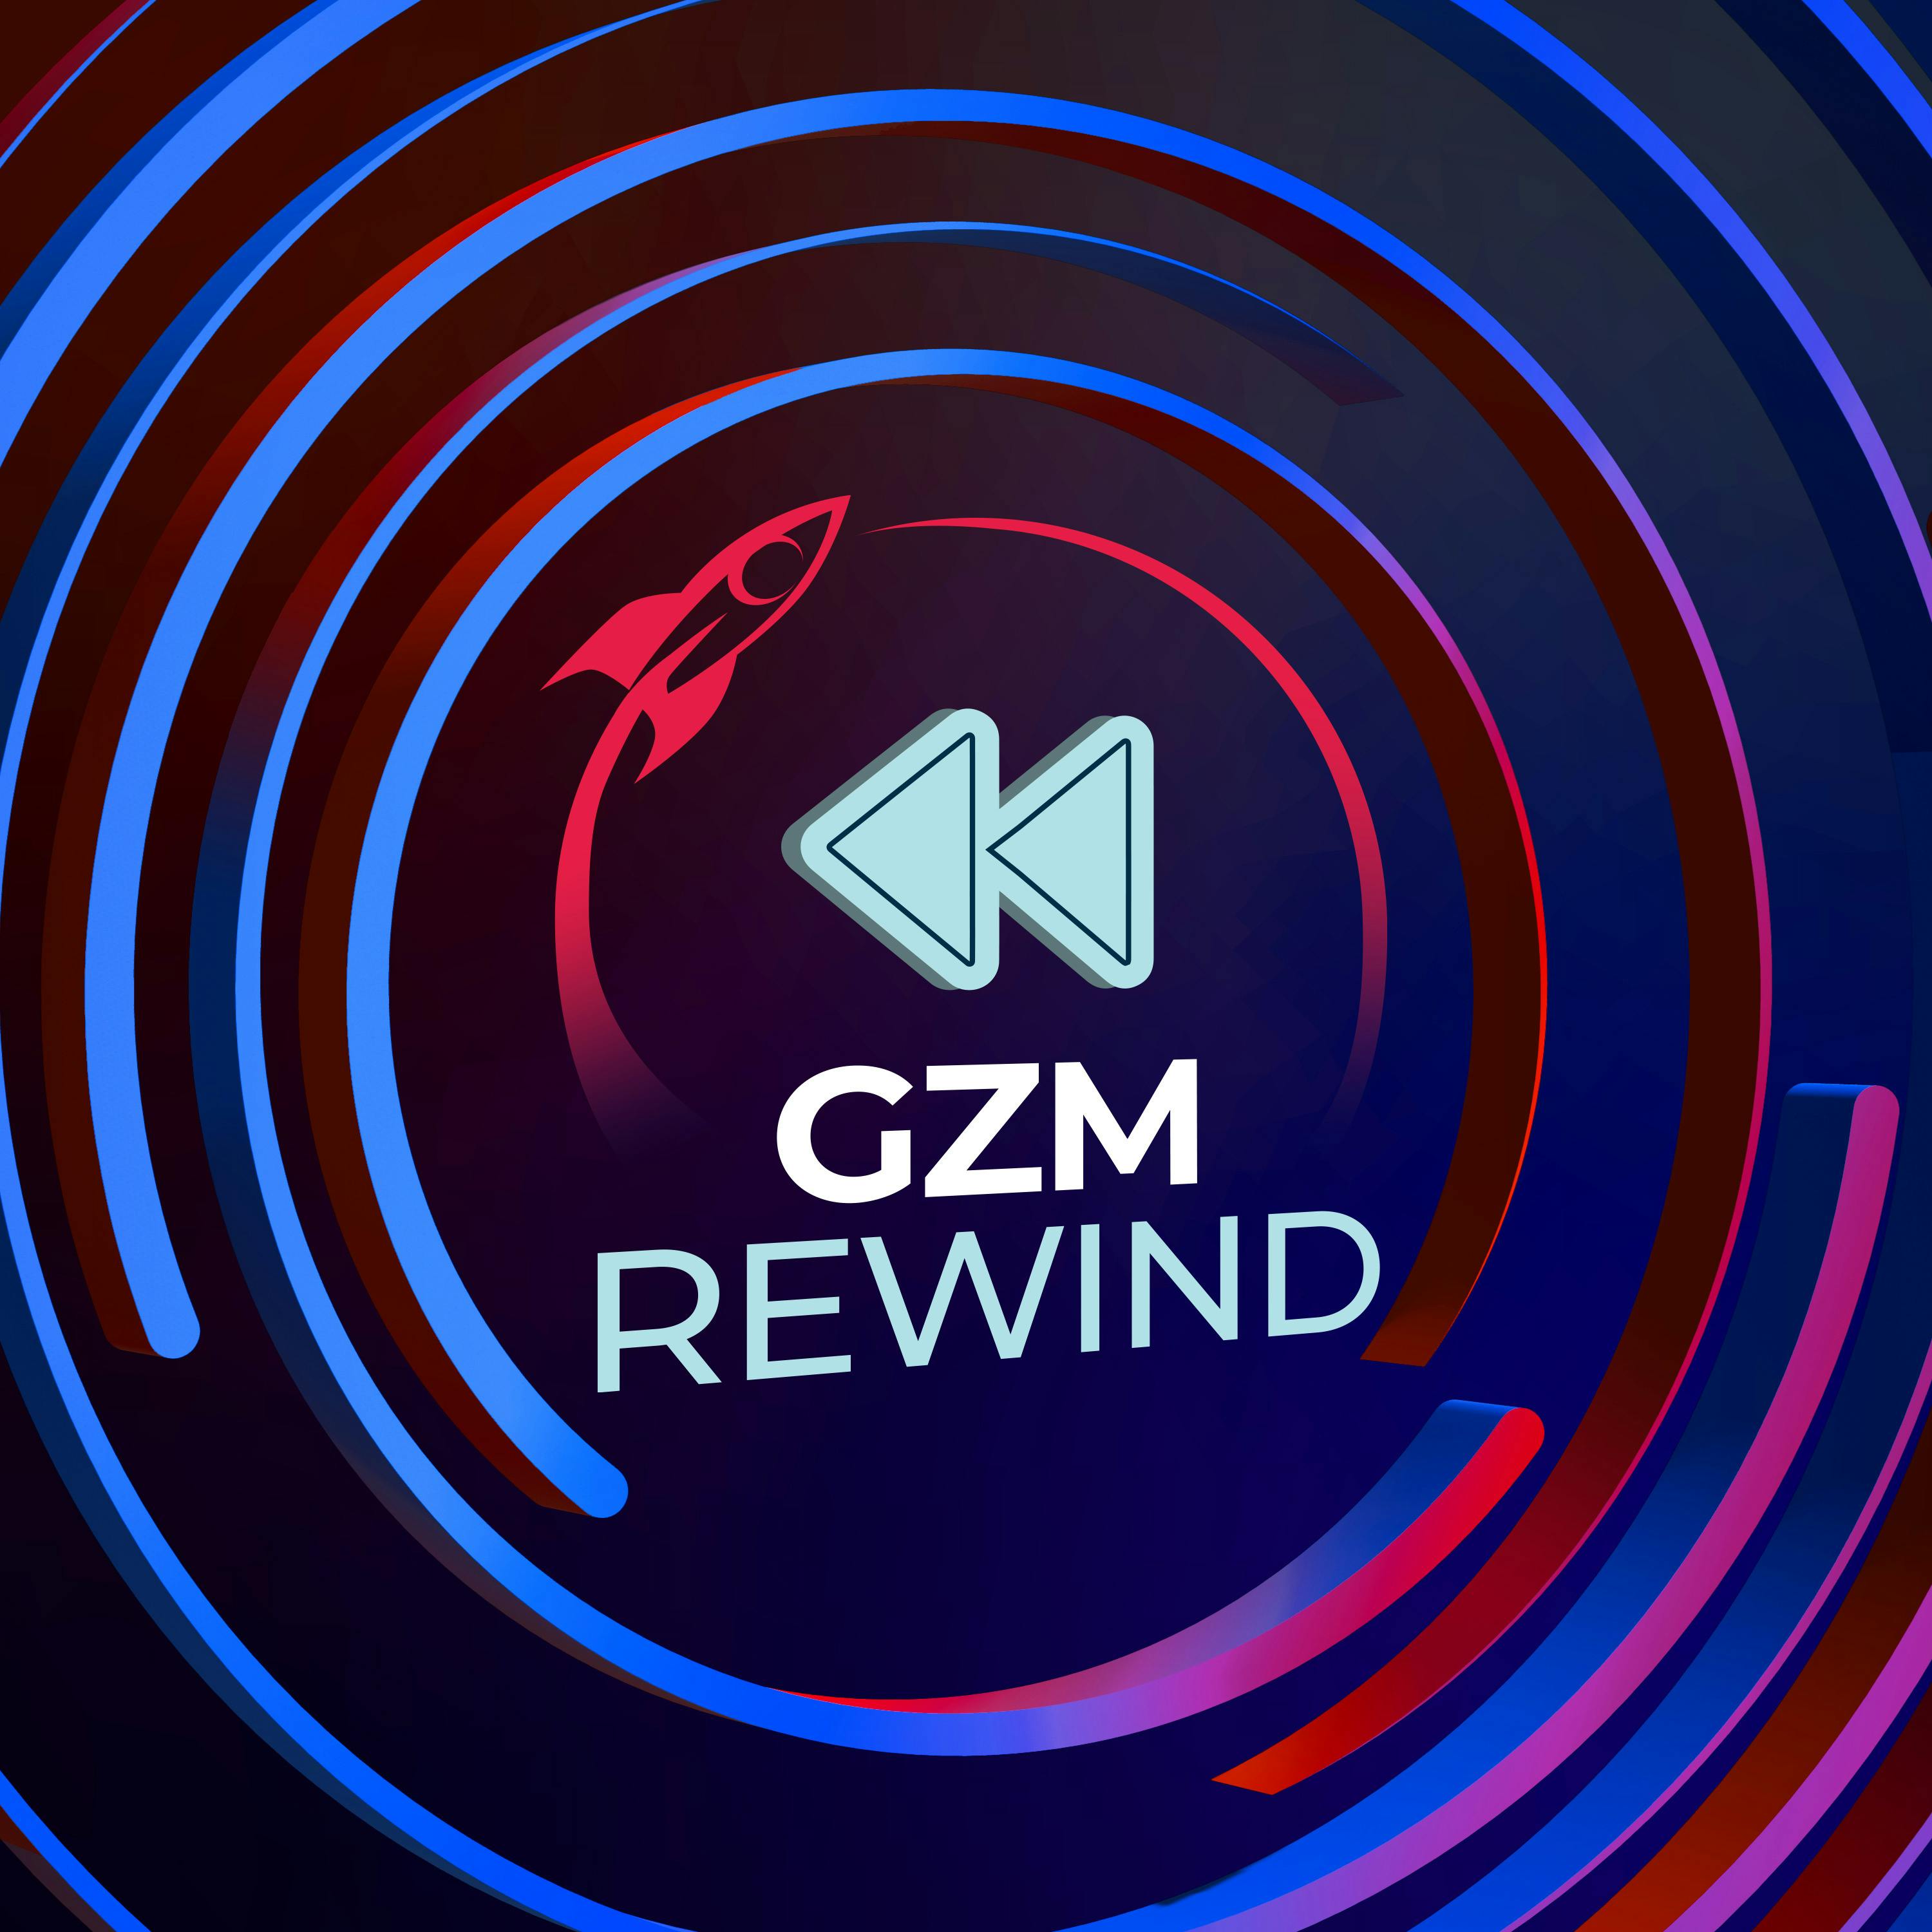 GZM Rewind